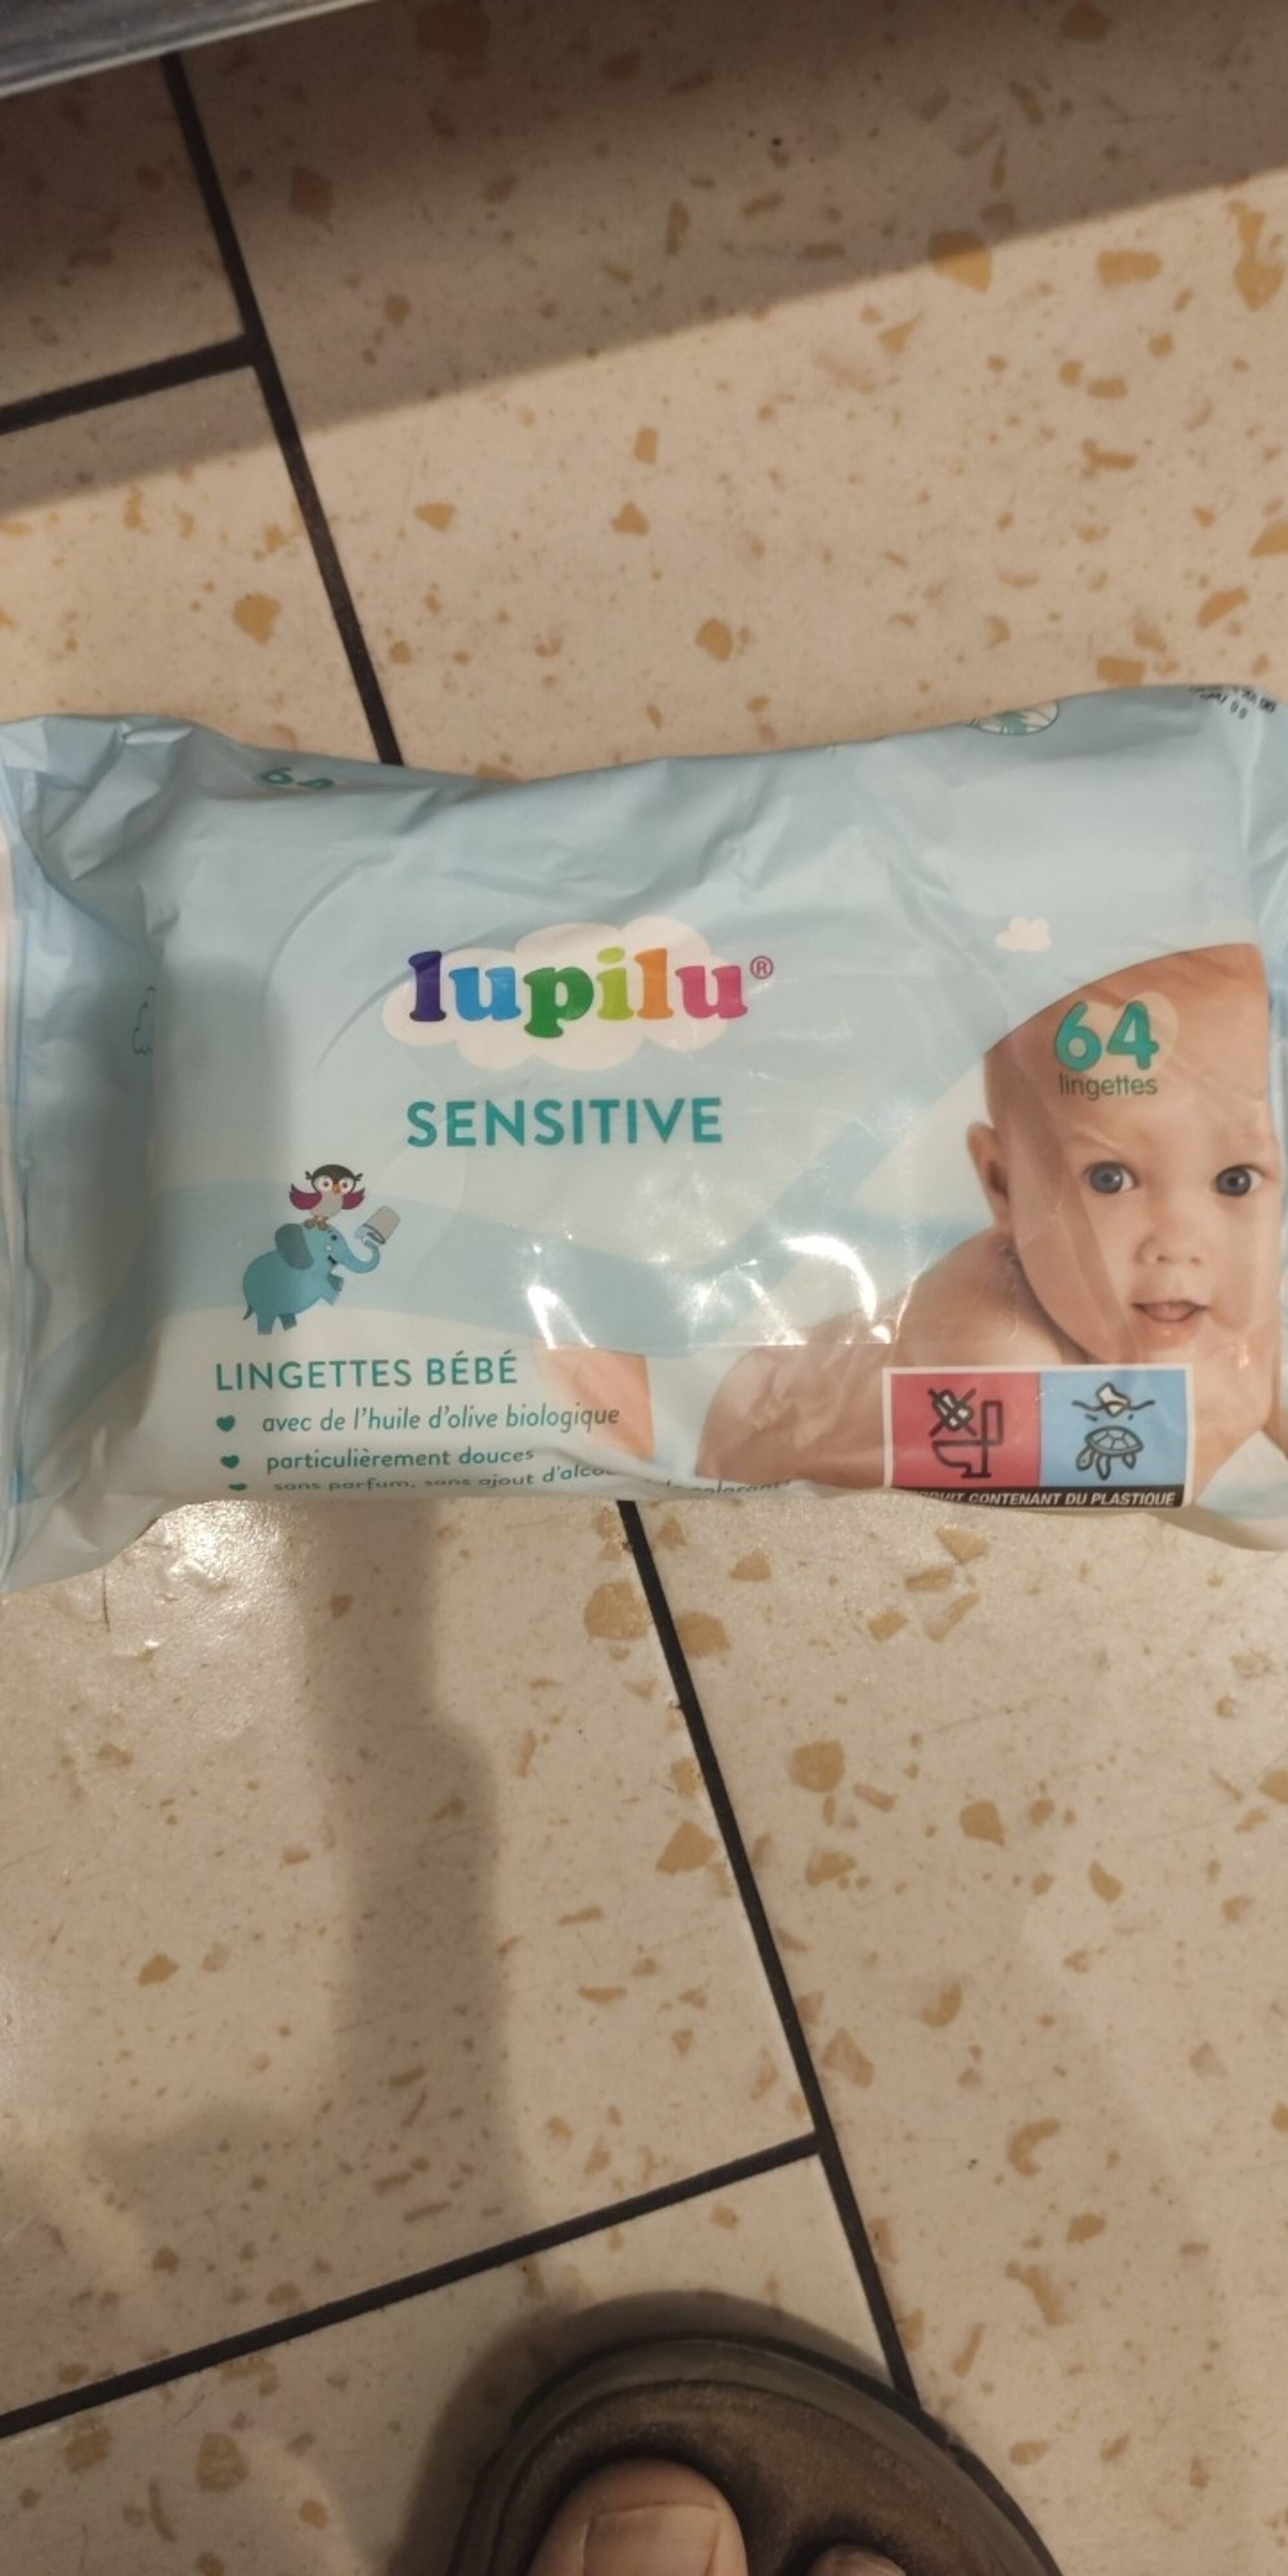 LUPILU - Sensitive lingettes bébé